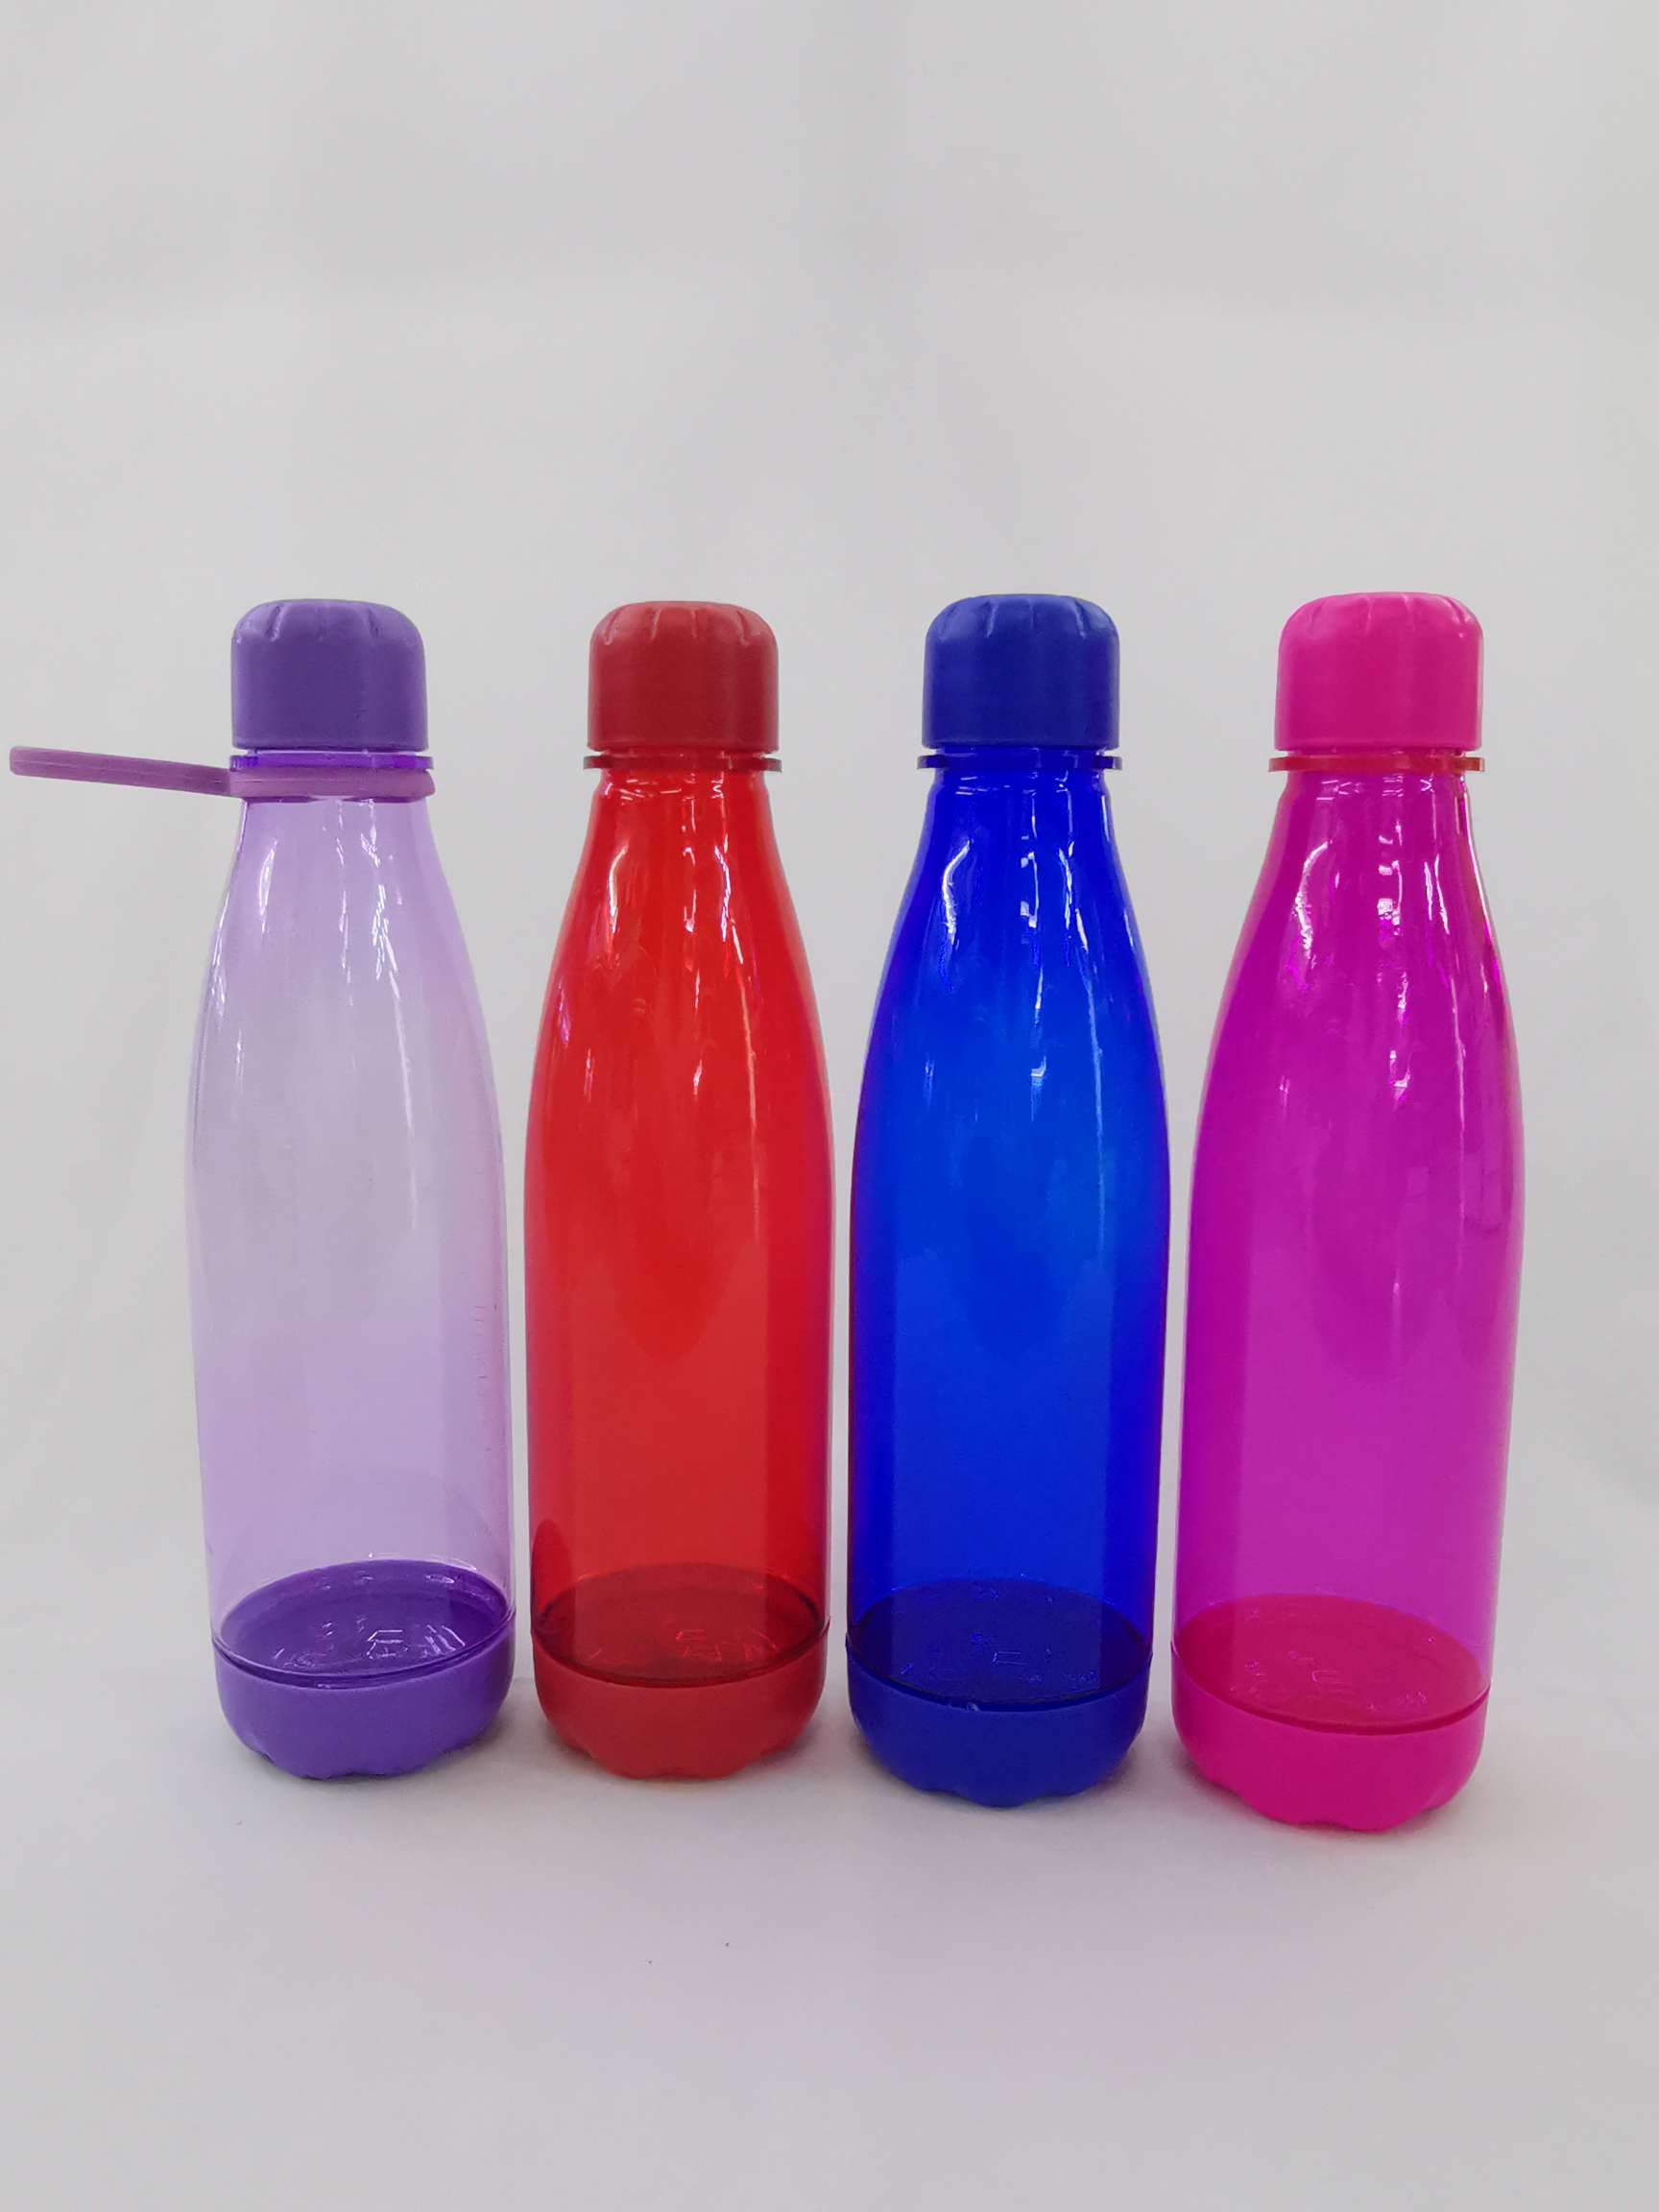 厂家批发直销便携式手提防漏透明 简约韩式650ml字母塑料水杯 可定制LOGO